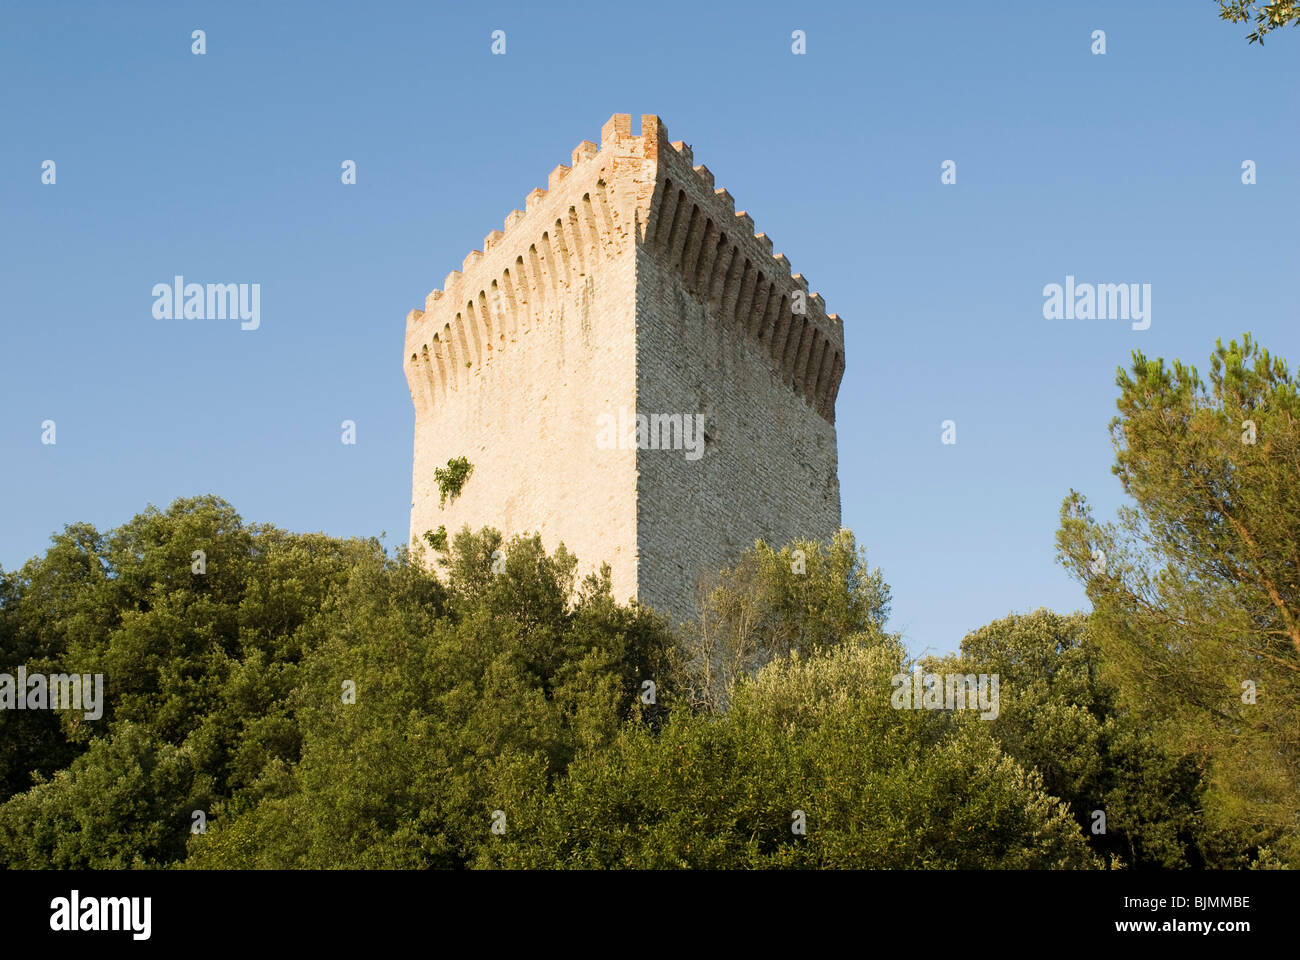 Italy, Umbria, Lago di Trasimeno, Castiglione del Lago, medieval fortress tower Stock Photo